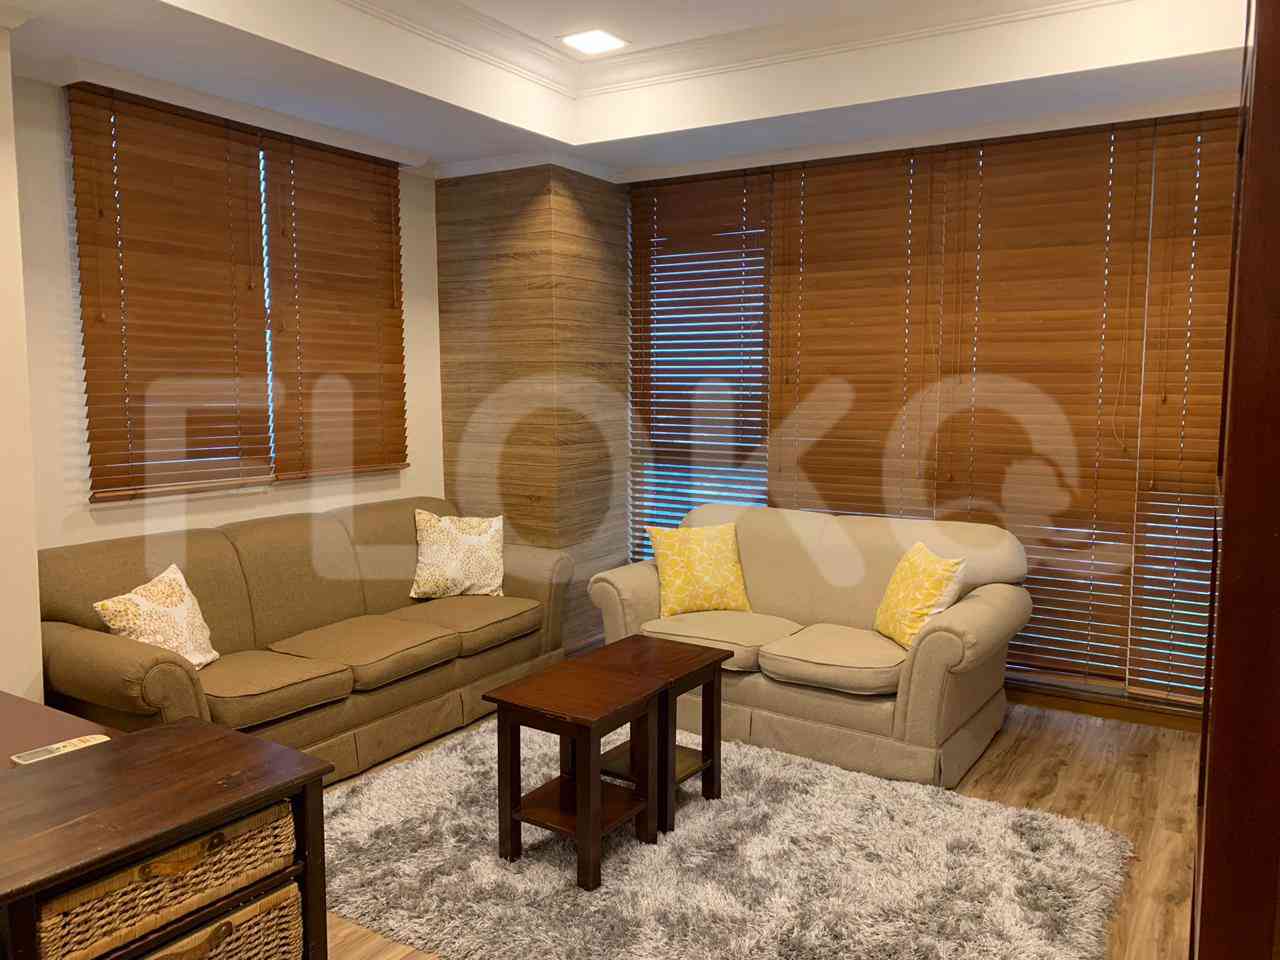 4 Bedroom on 10th Floor for Rent in Puri Imperium Apartment - fkua44 3